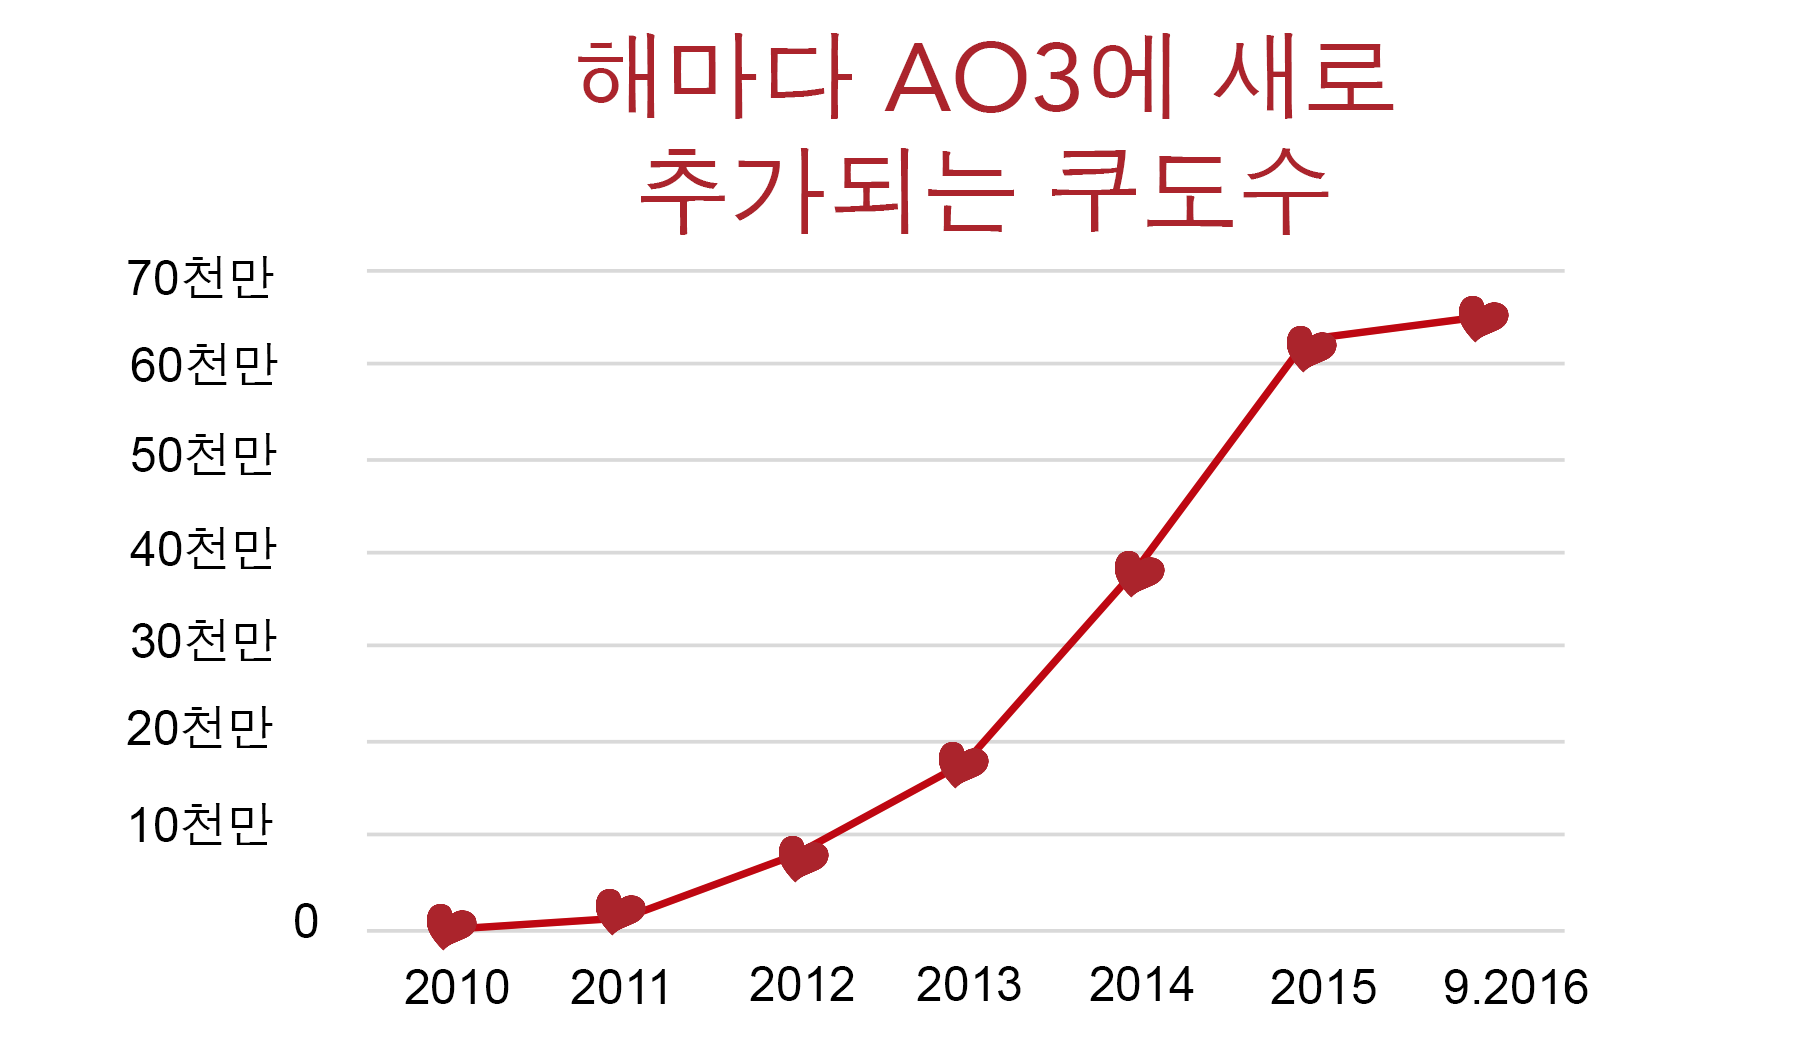 AO3의 쿠도 증가 그래프, 2010년 0부터 2016년 8월을 기점으로 6천만이 넘음.